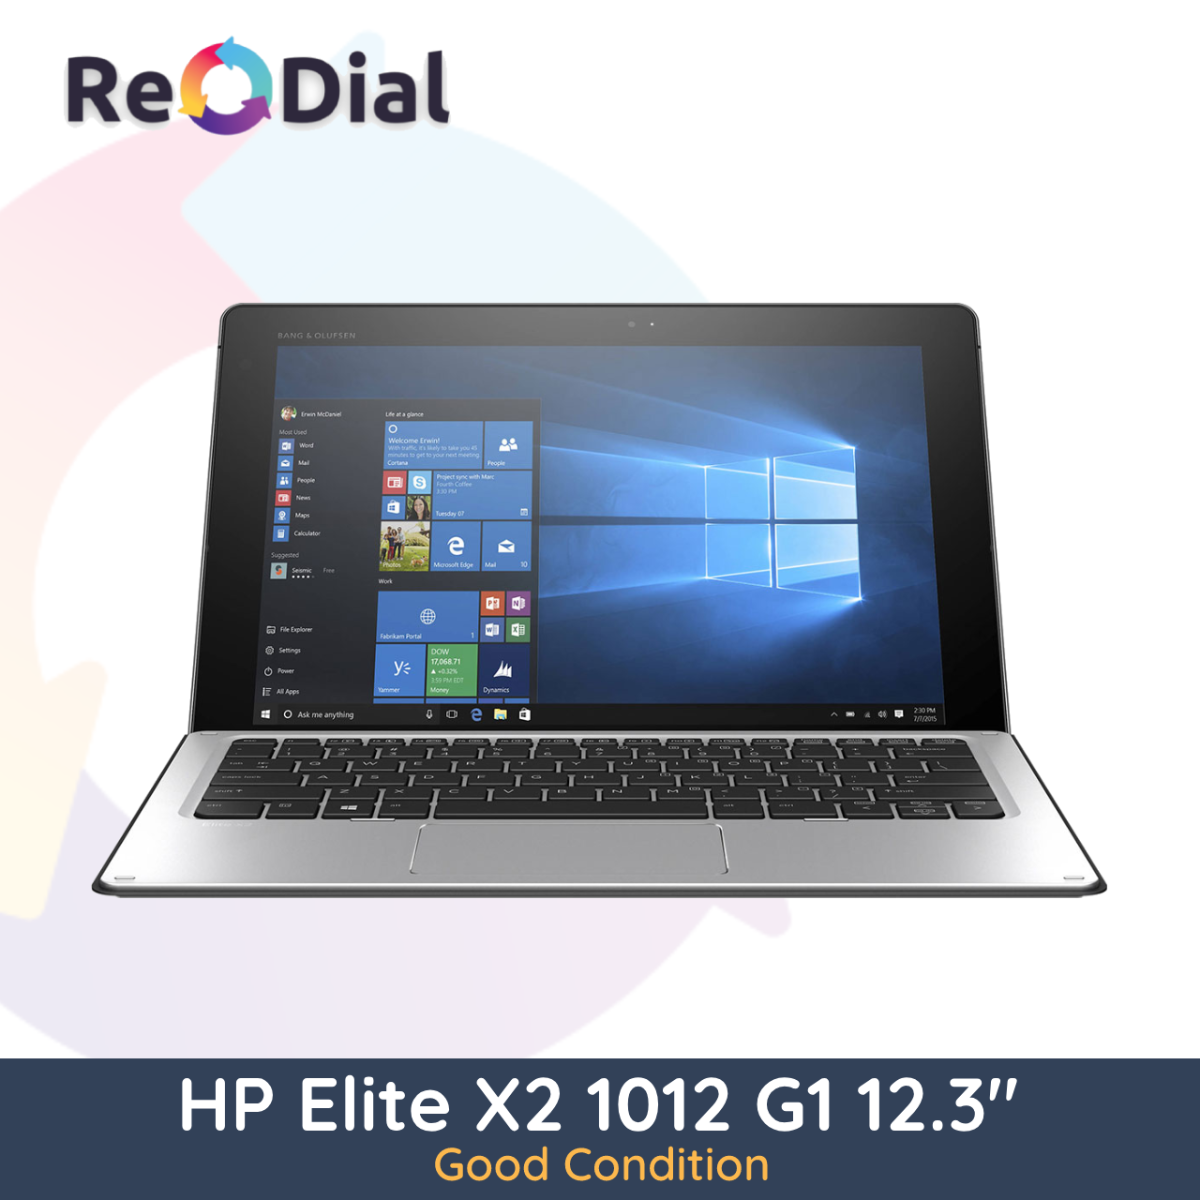 HP Elite X2 1012 G1 Intel m5-6Y54 Cellular 128Gb 4Gb RAM Windows 10 Pro - Good